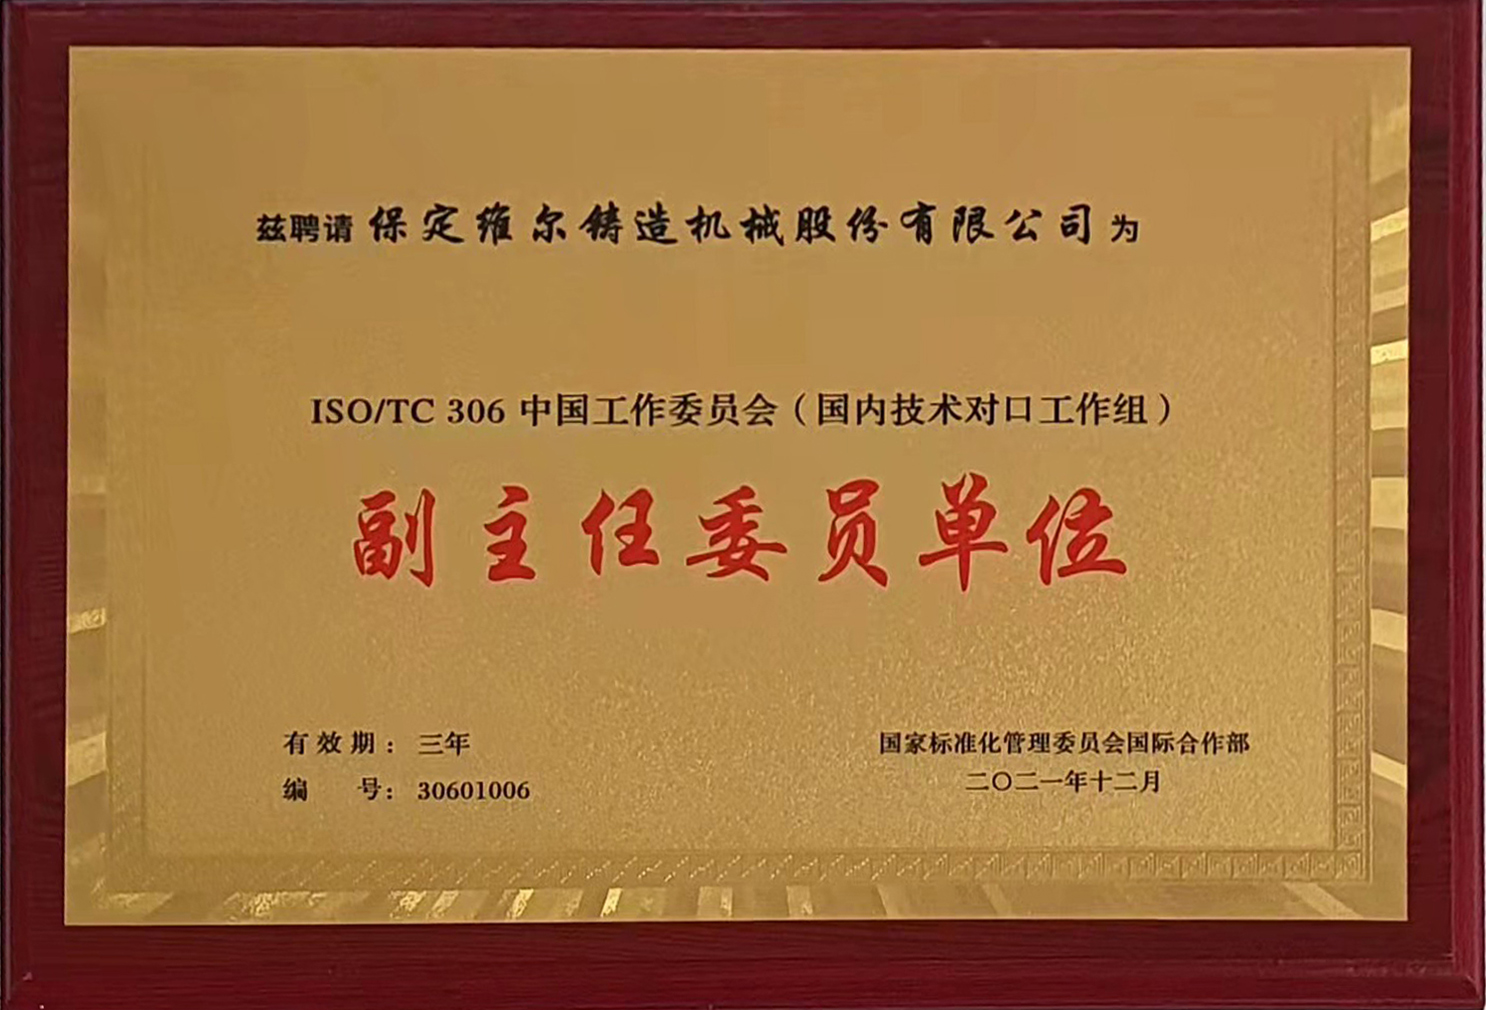 国际标准化组织铸造机械手艺委员会 (ISO/TC306)中国是情委员会副主任委员单位